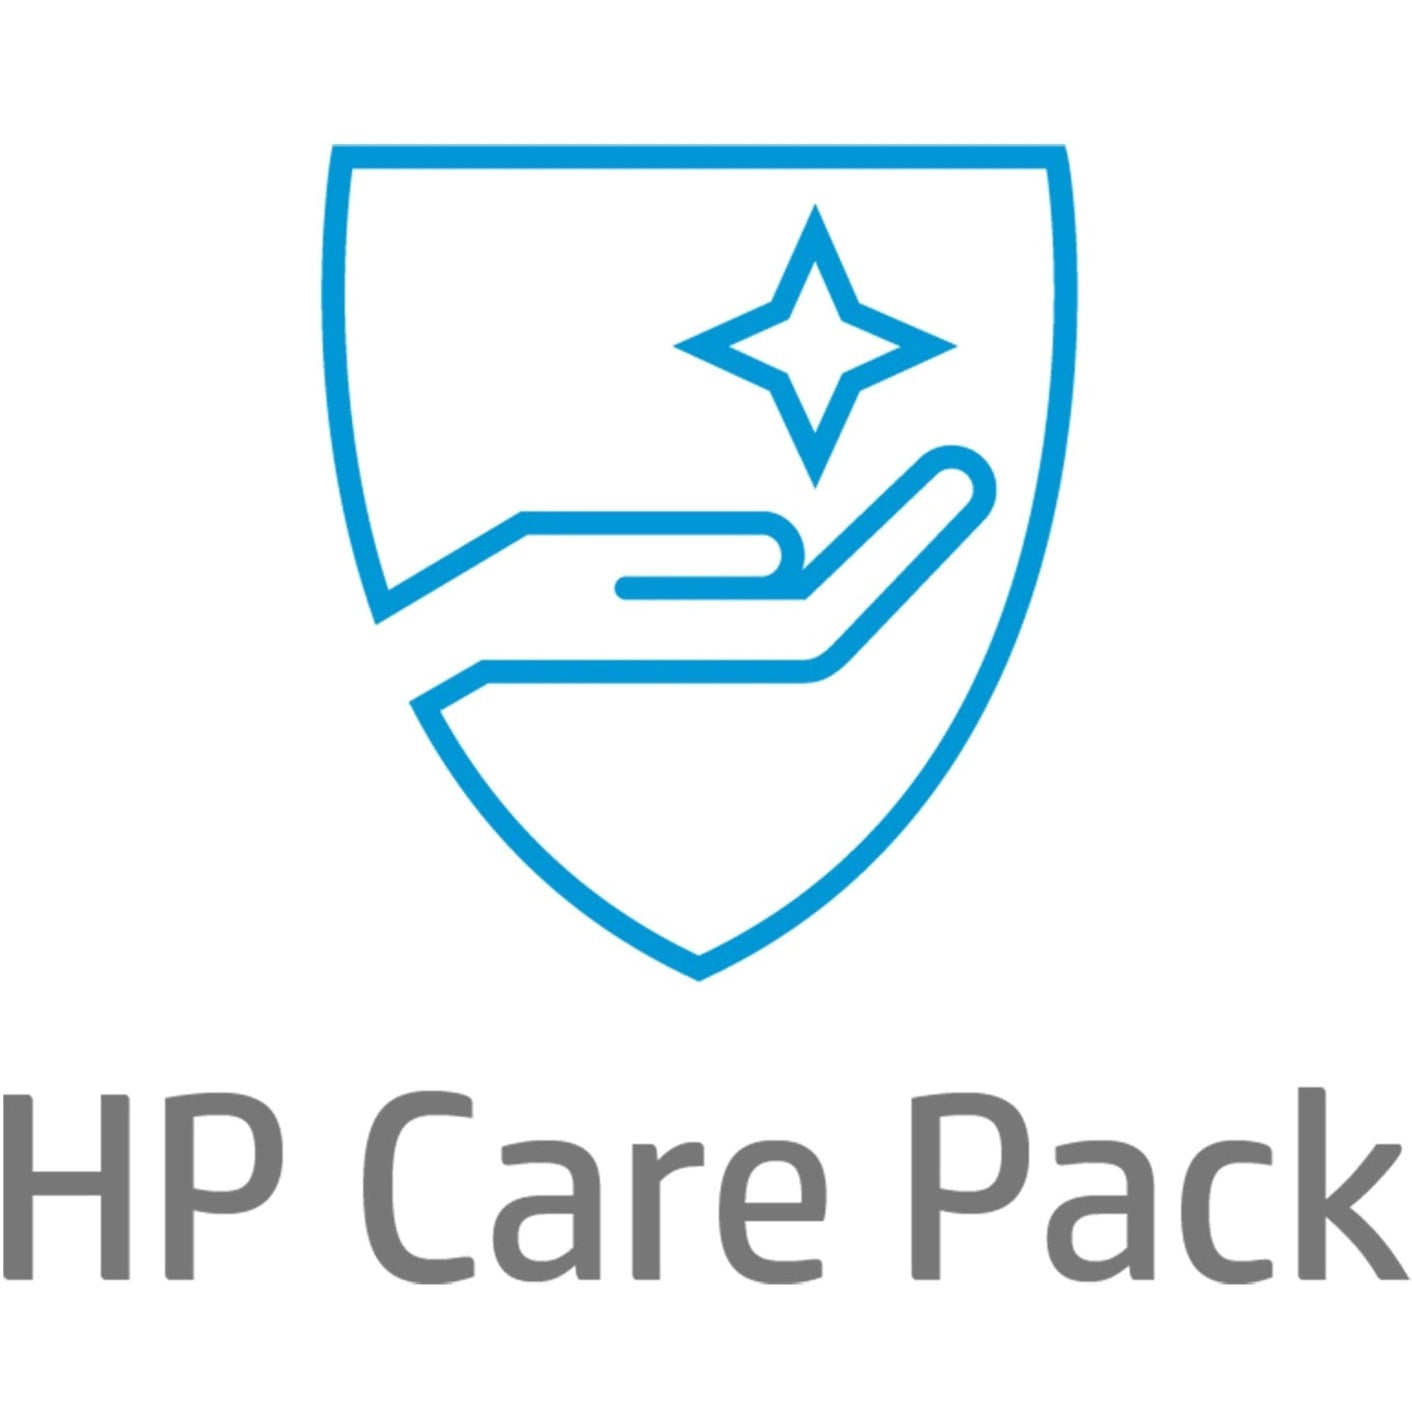 HP Care Pack - 4 Year - Service (UJ337E)